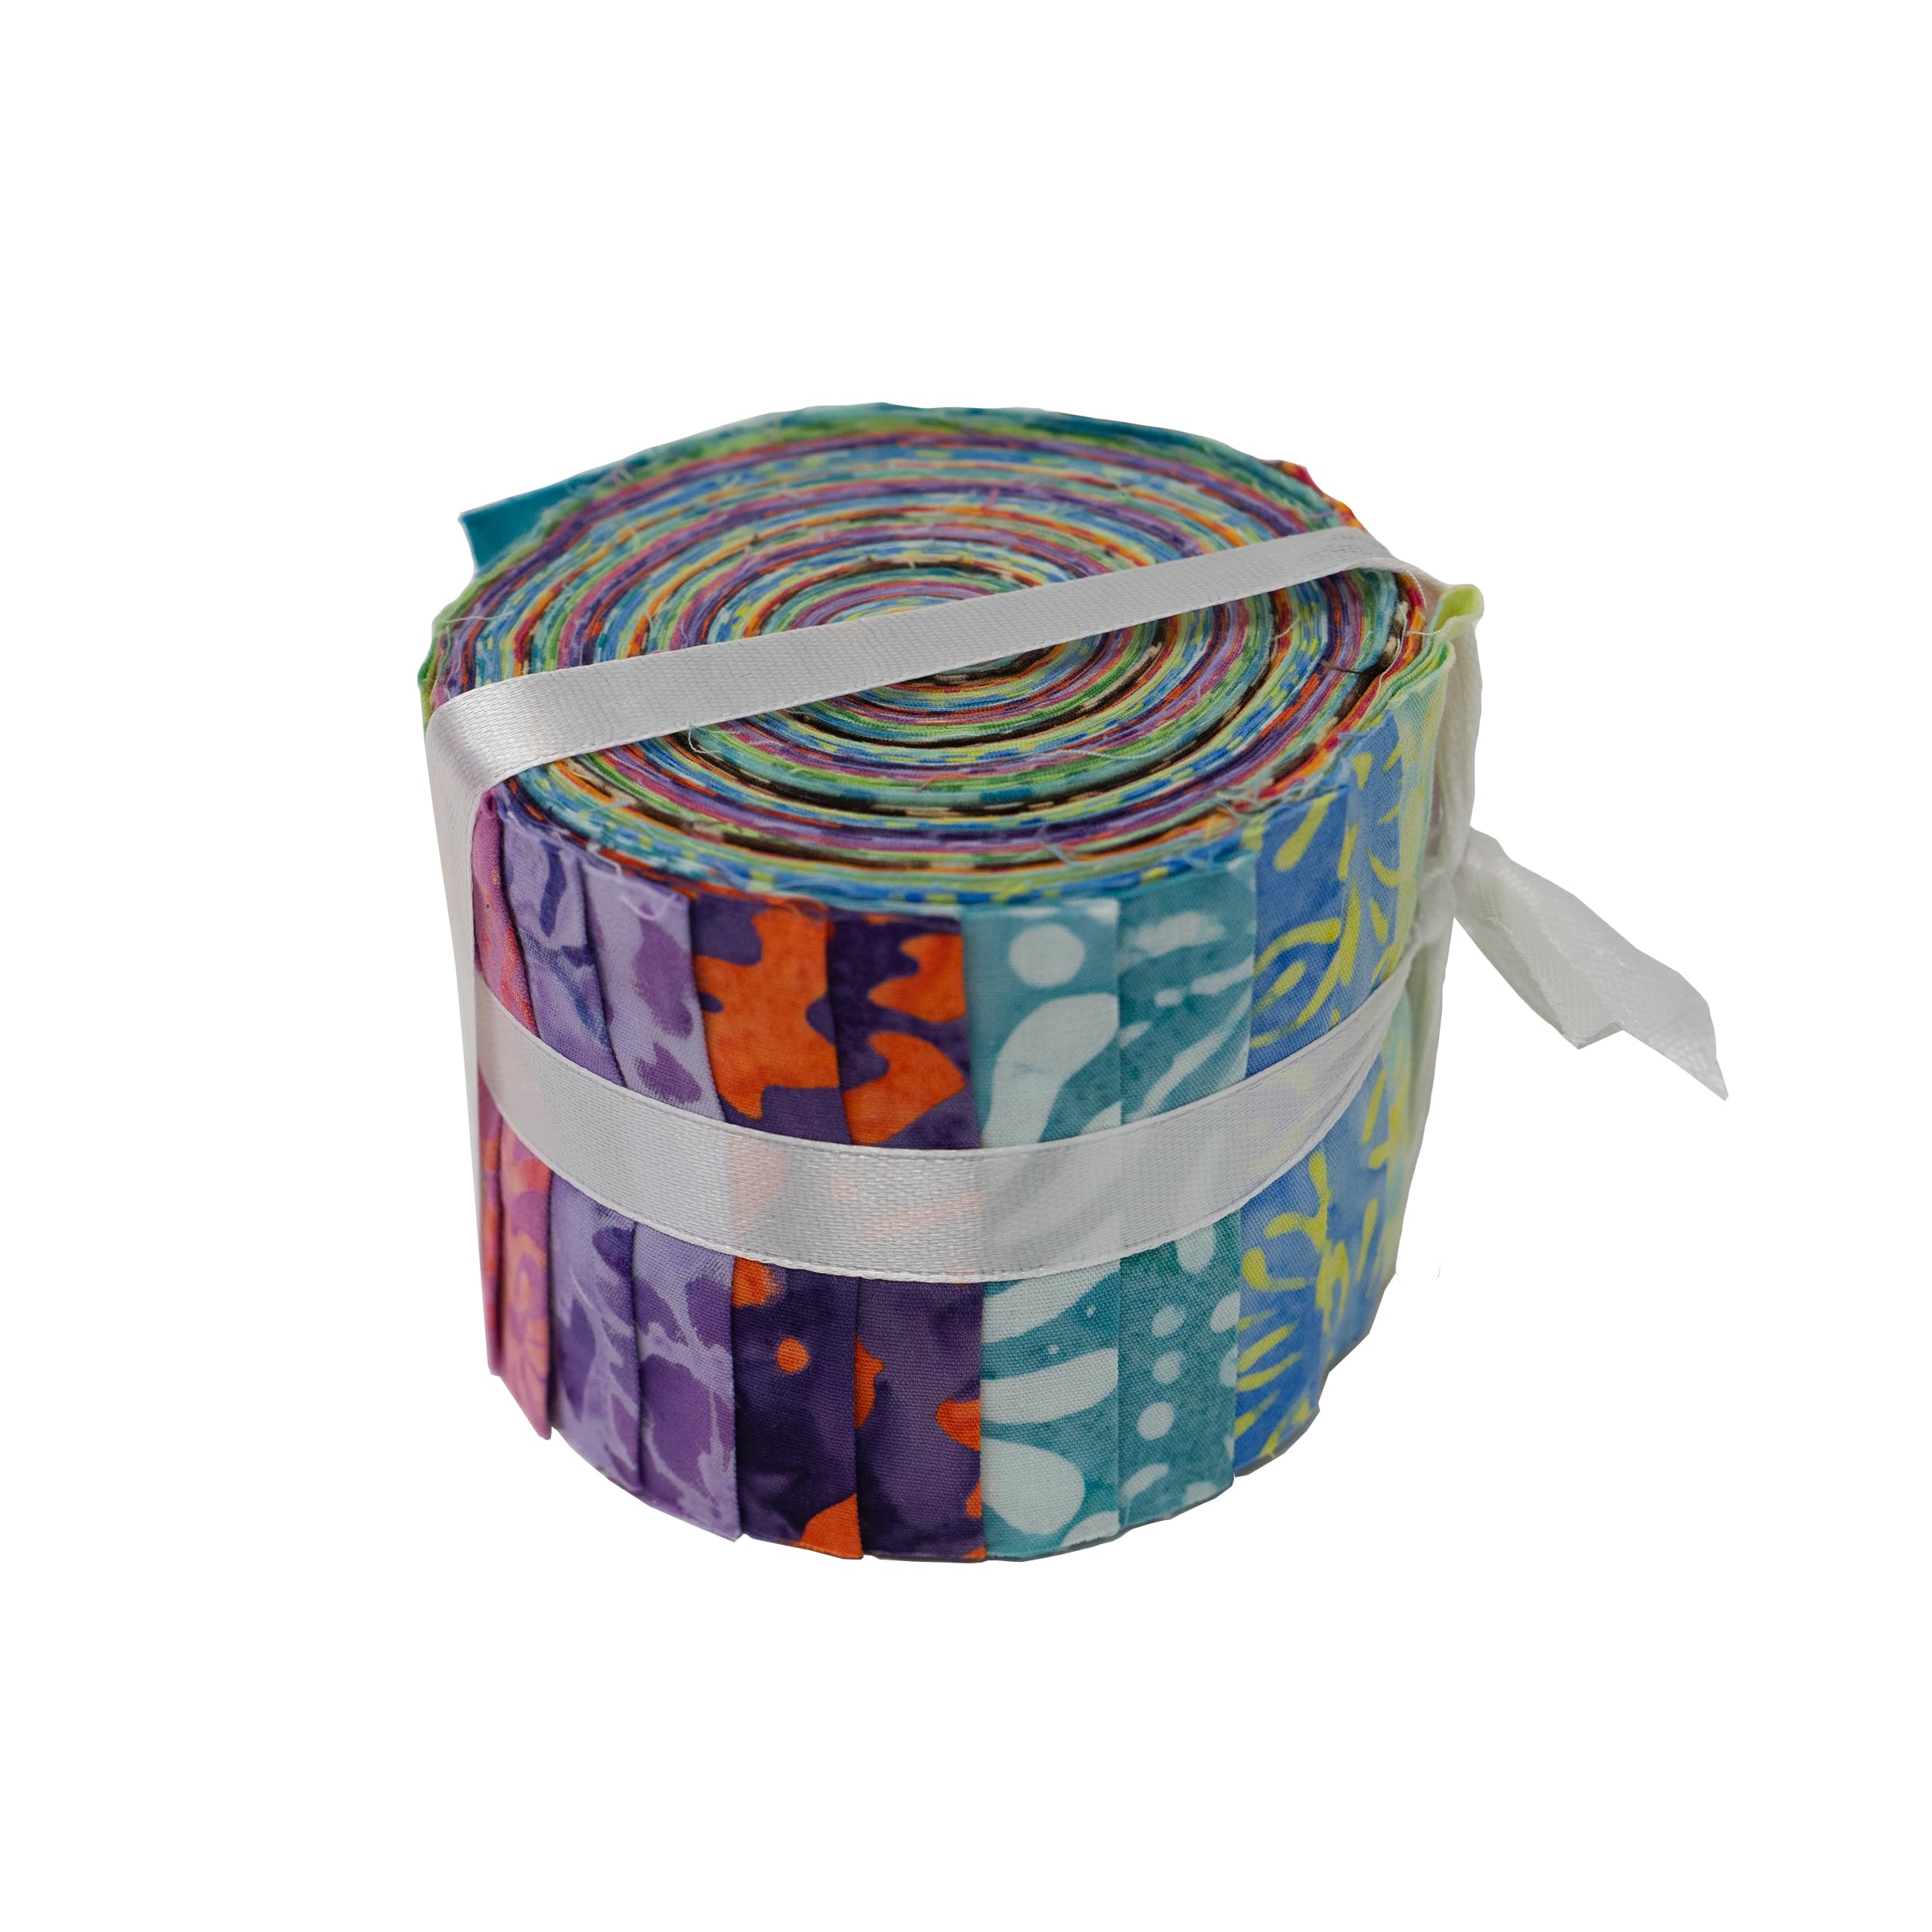 Stitch & Sparkle Indonesian Premium Batik Cotton Vibrant Dreams Jelly Roll 2.5''x 44''